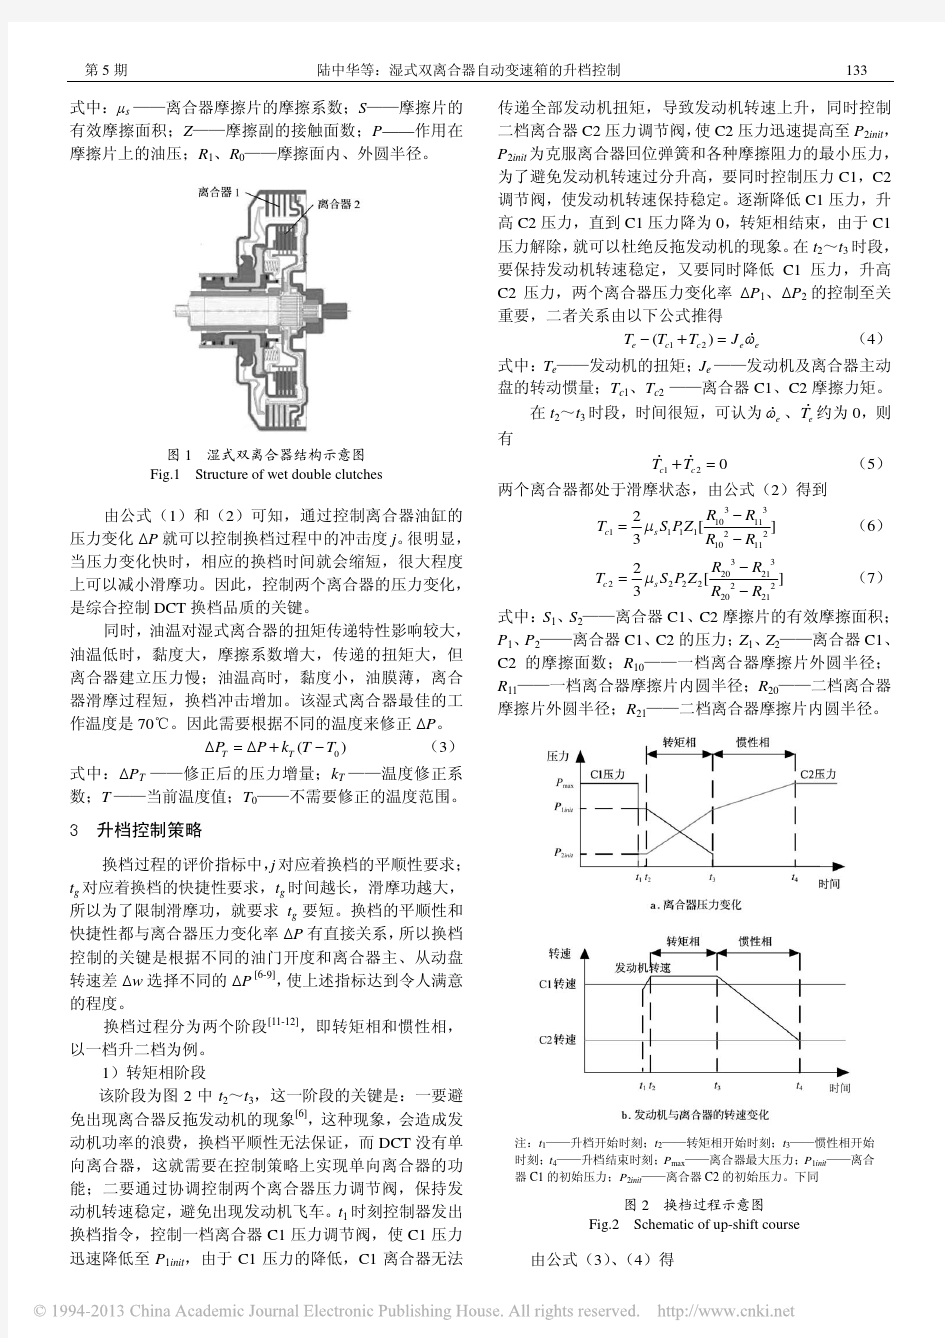 湿式双离合器自动变速器的升档控制_陆中华